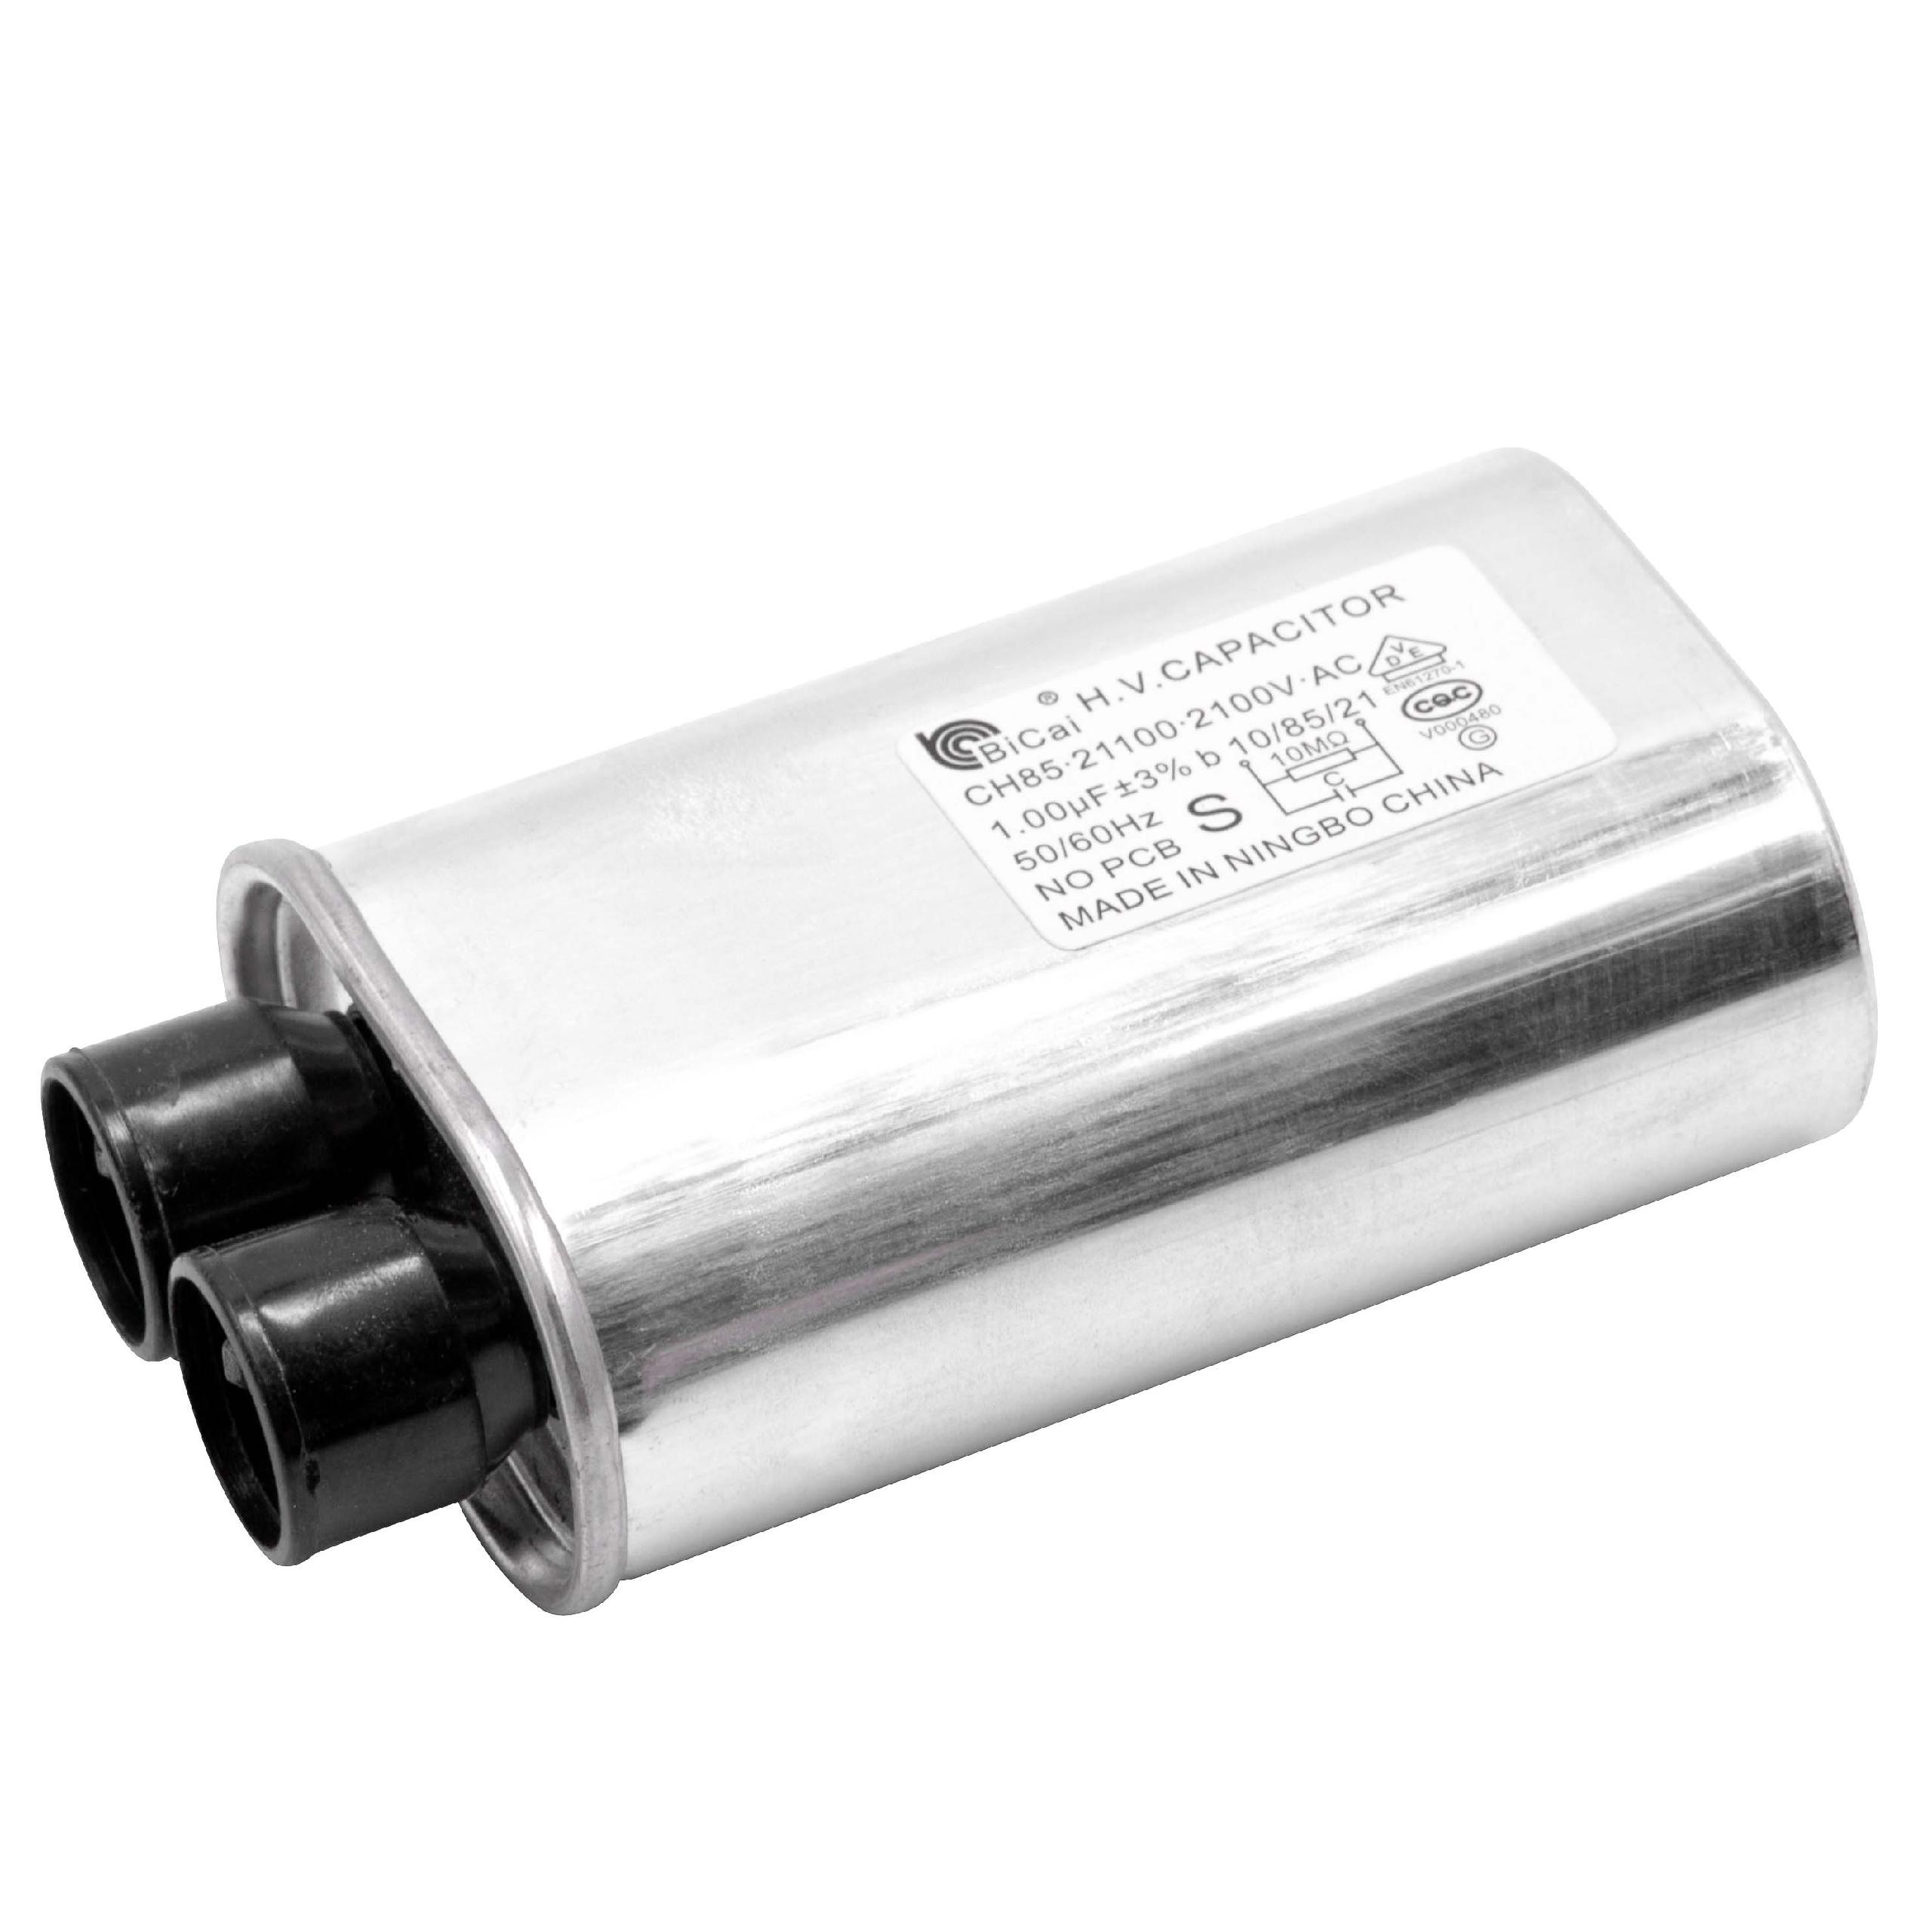 Pieza de repuesto condensador de alta tensión reemplaza CH85-21100 para microondas